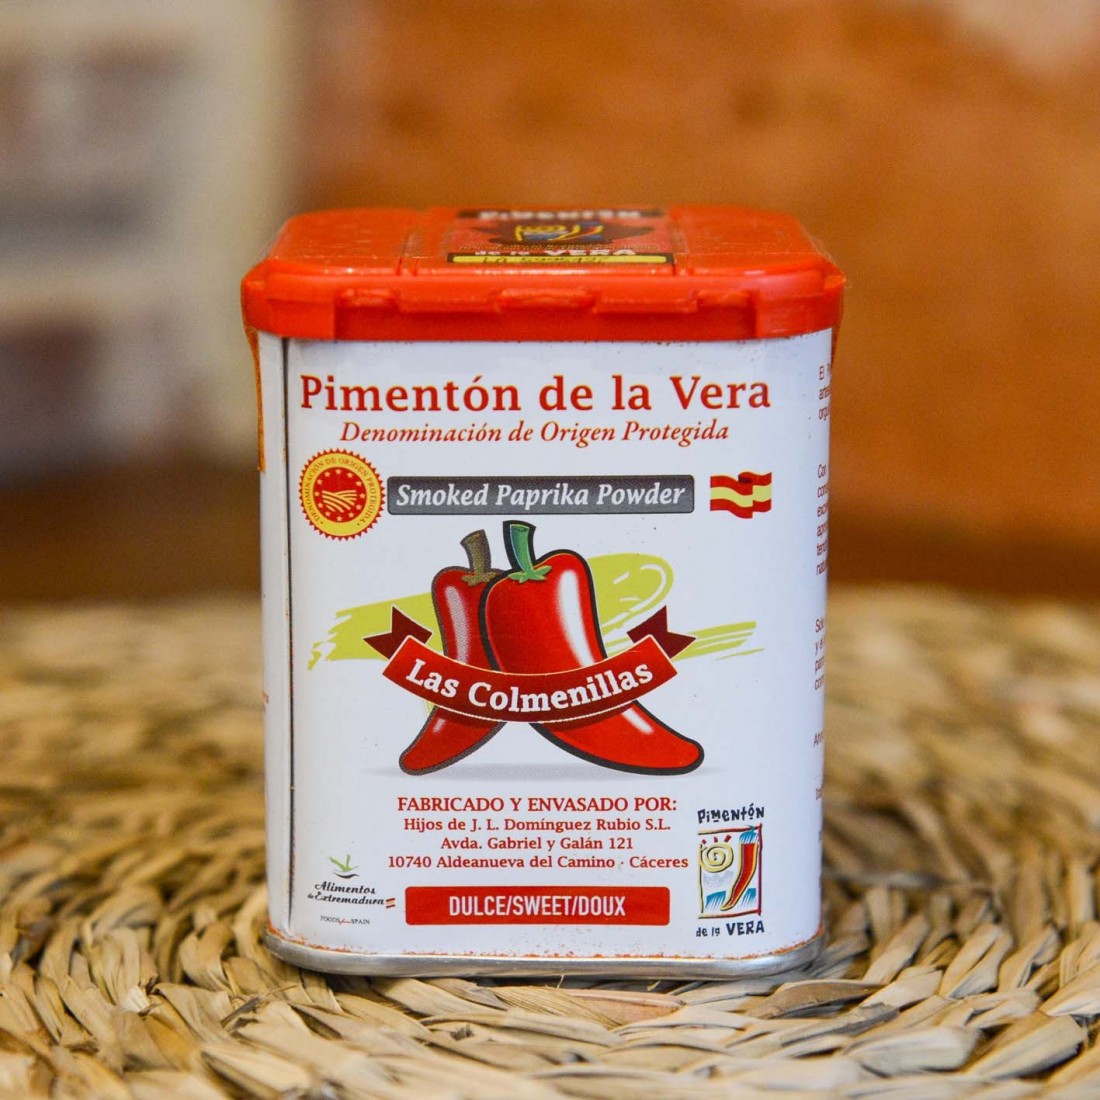 Pimentón de la Vera D.O. Picante. Productos de Extremadura.